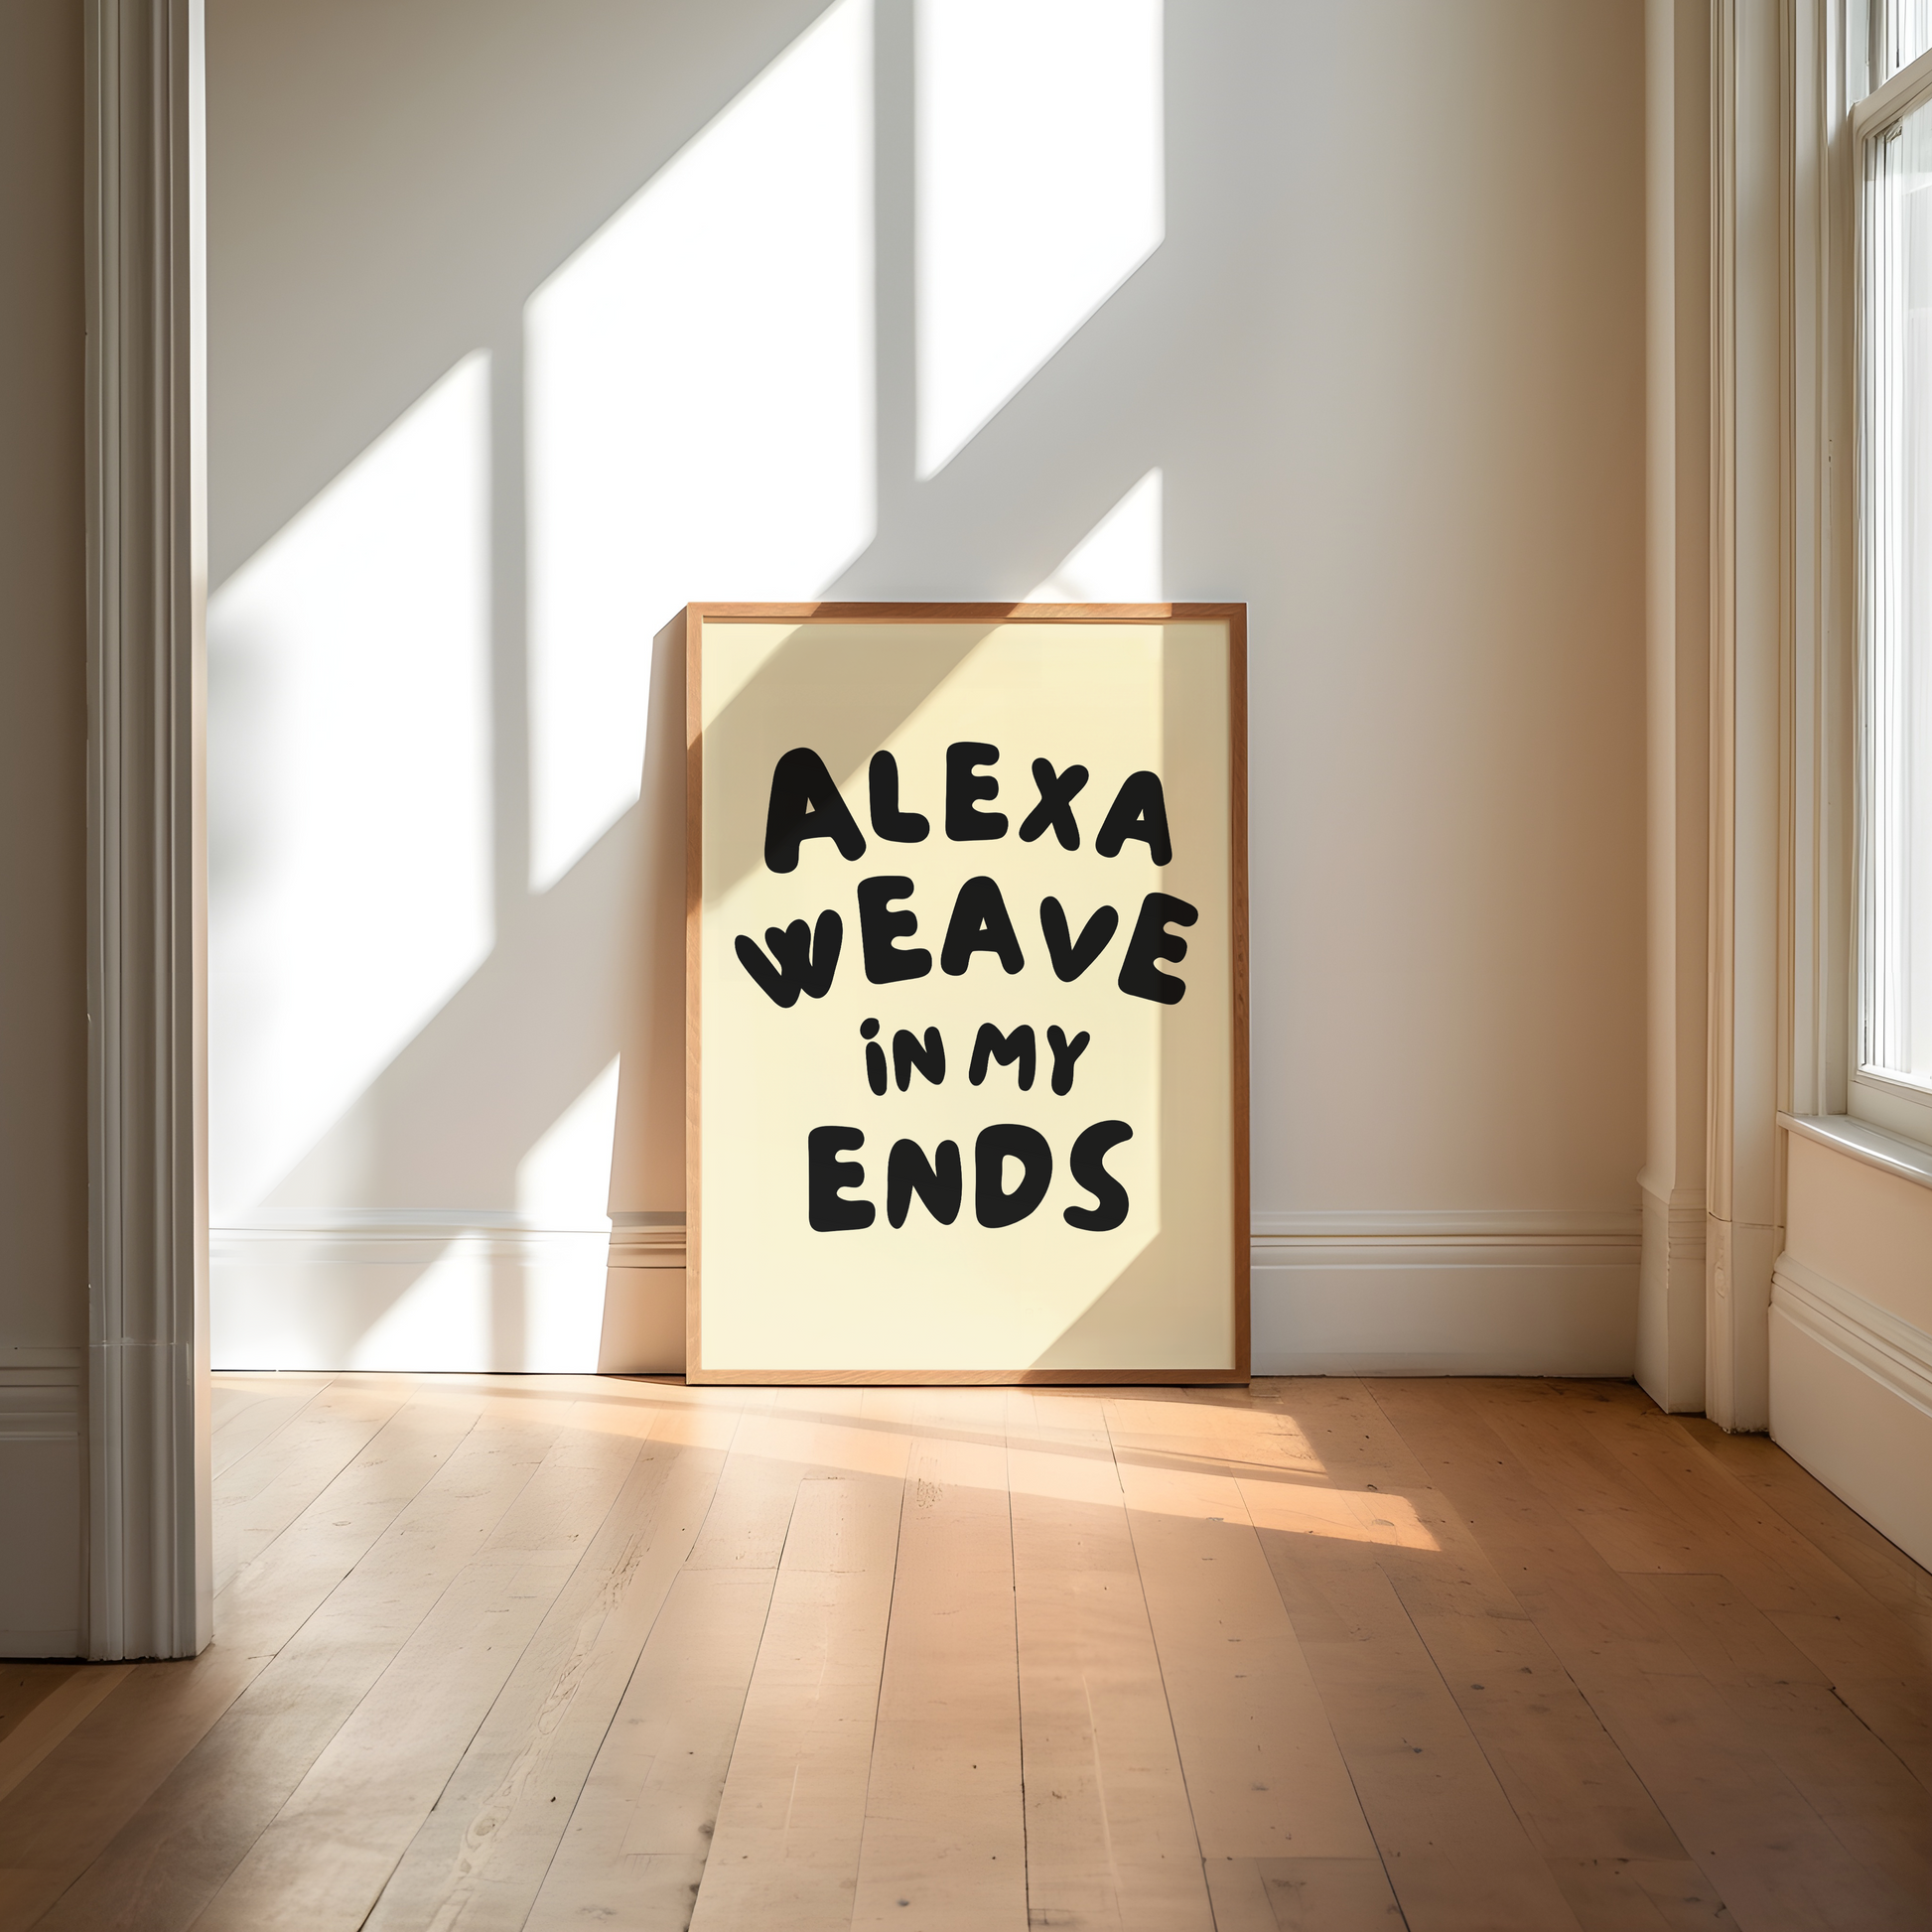 Alexa weave in my ends digital art print cream black